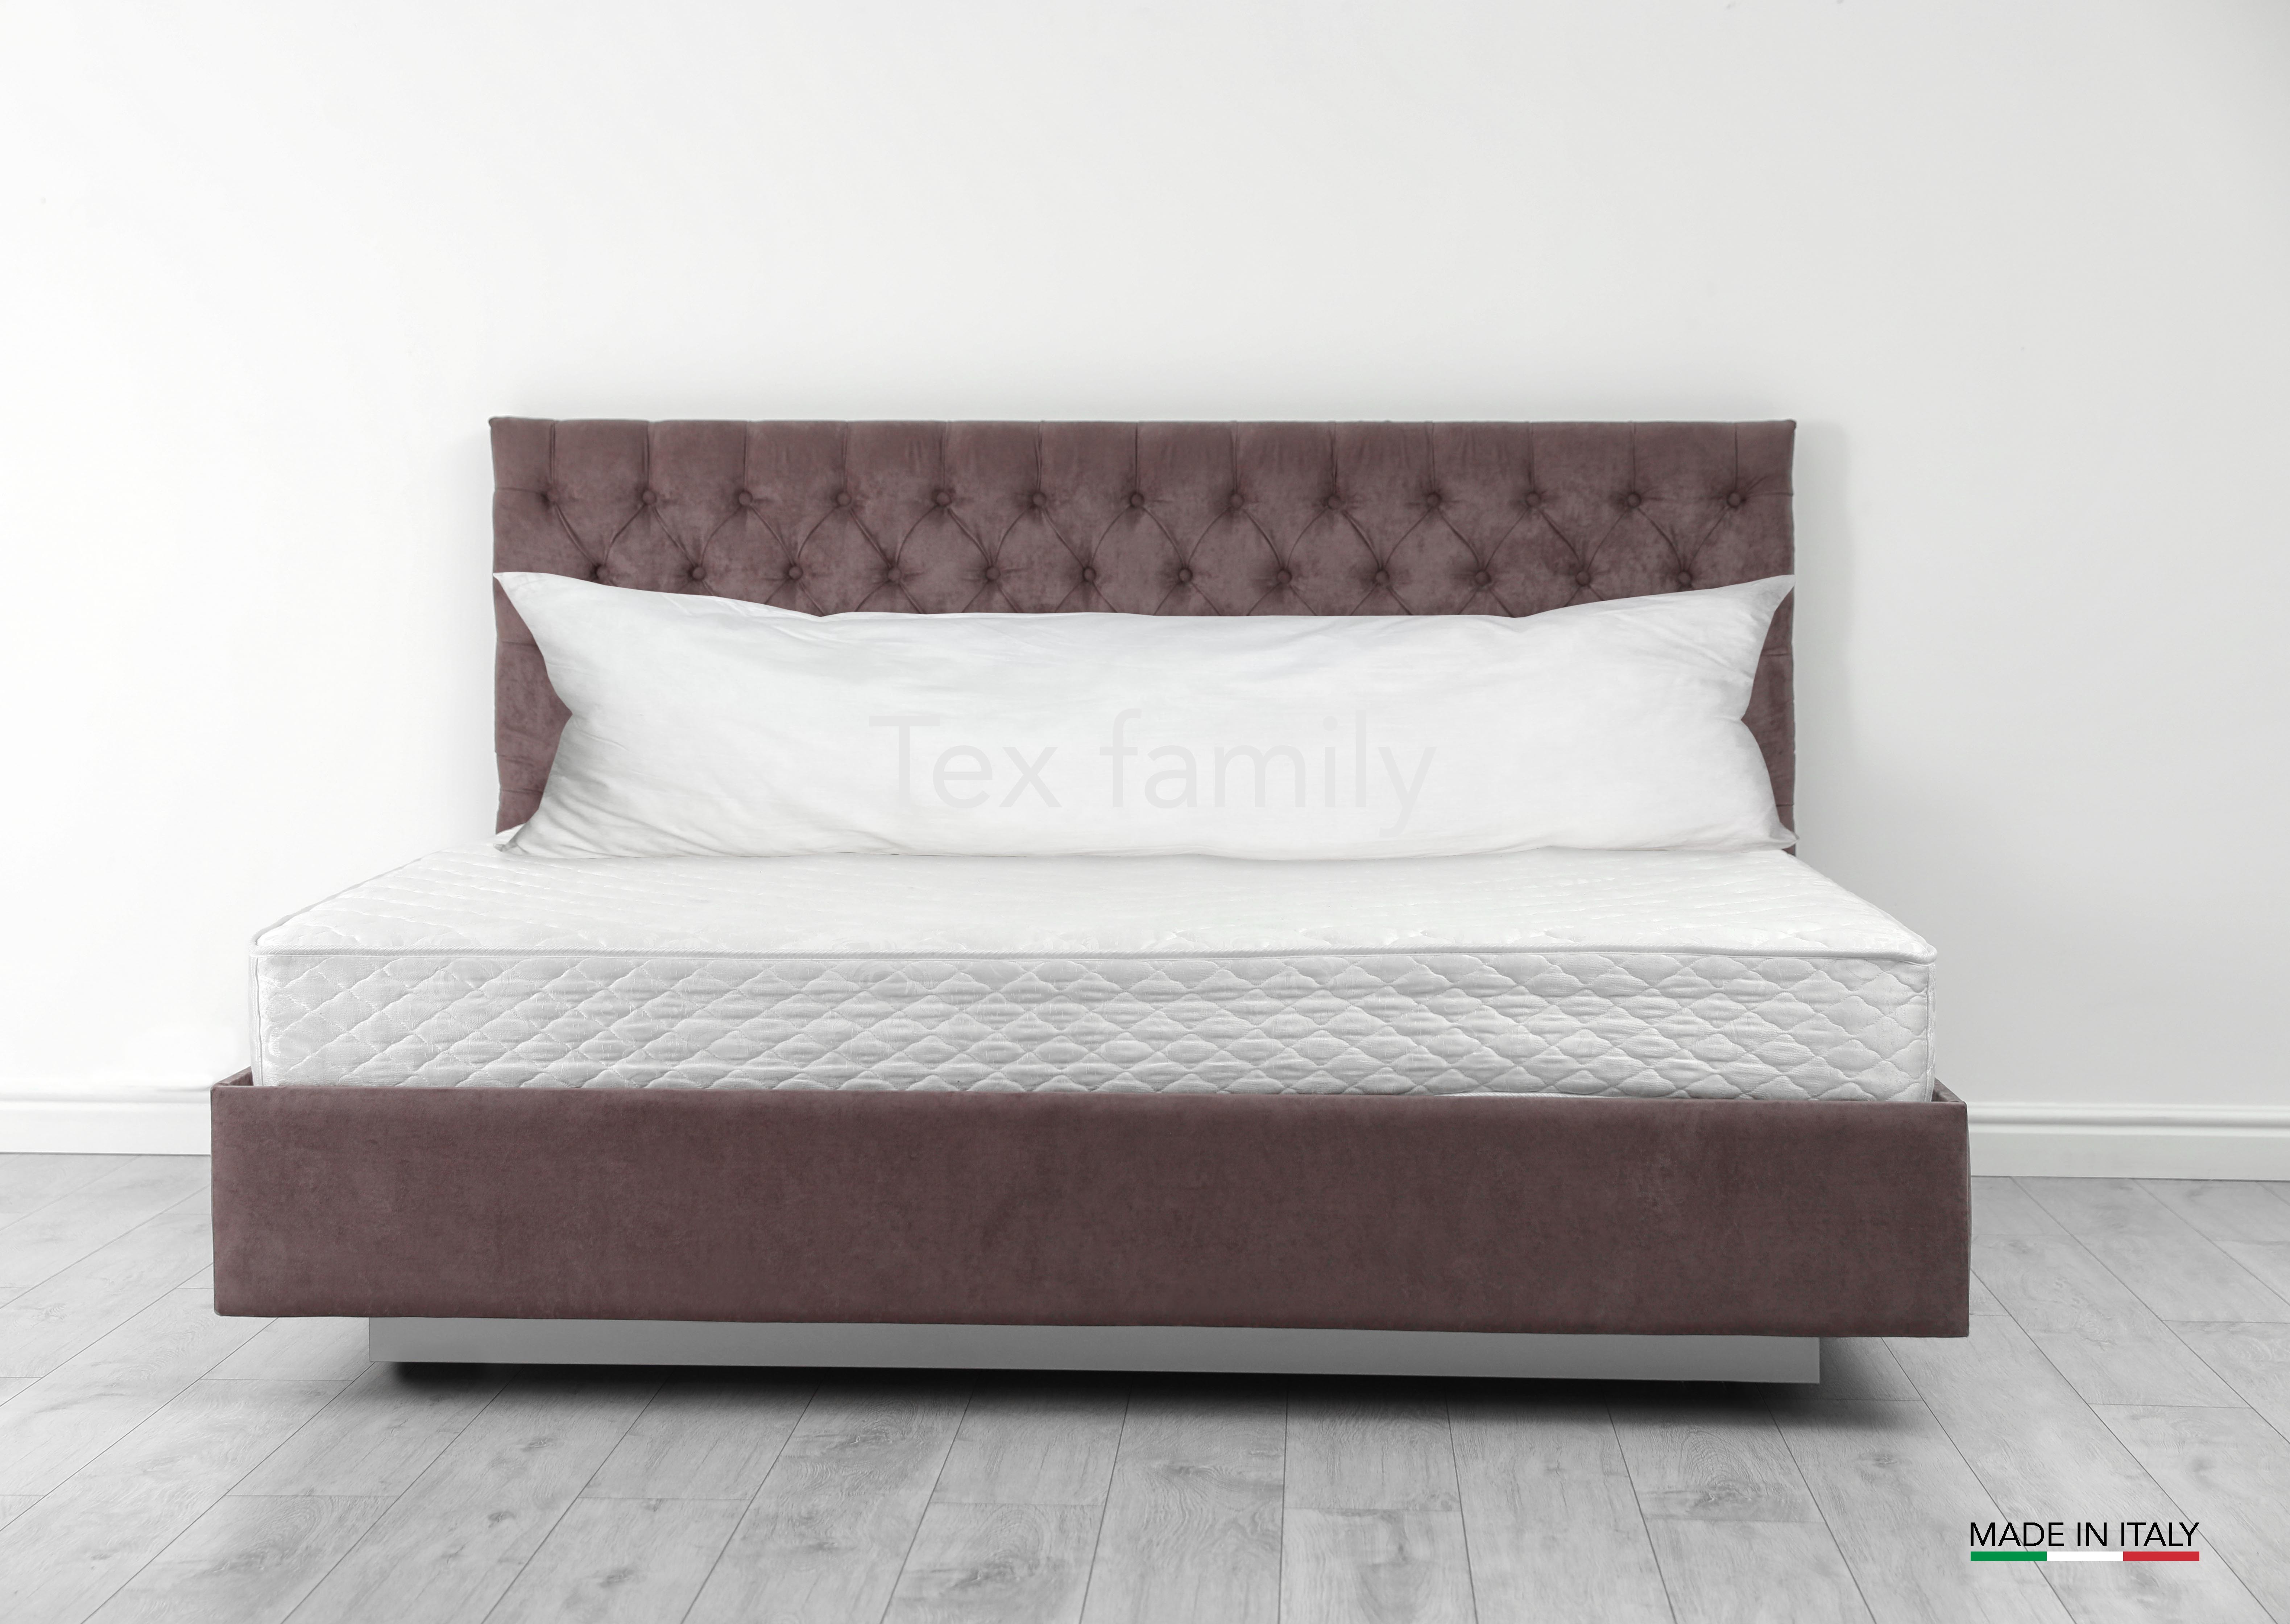 FEDERA QUEEN per cuscino letto Maxi Misura cm. 55 X 160 Colore Bianco